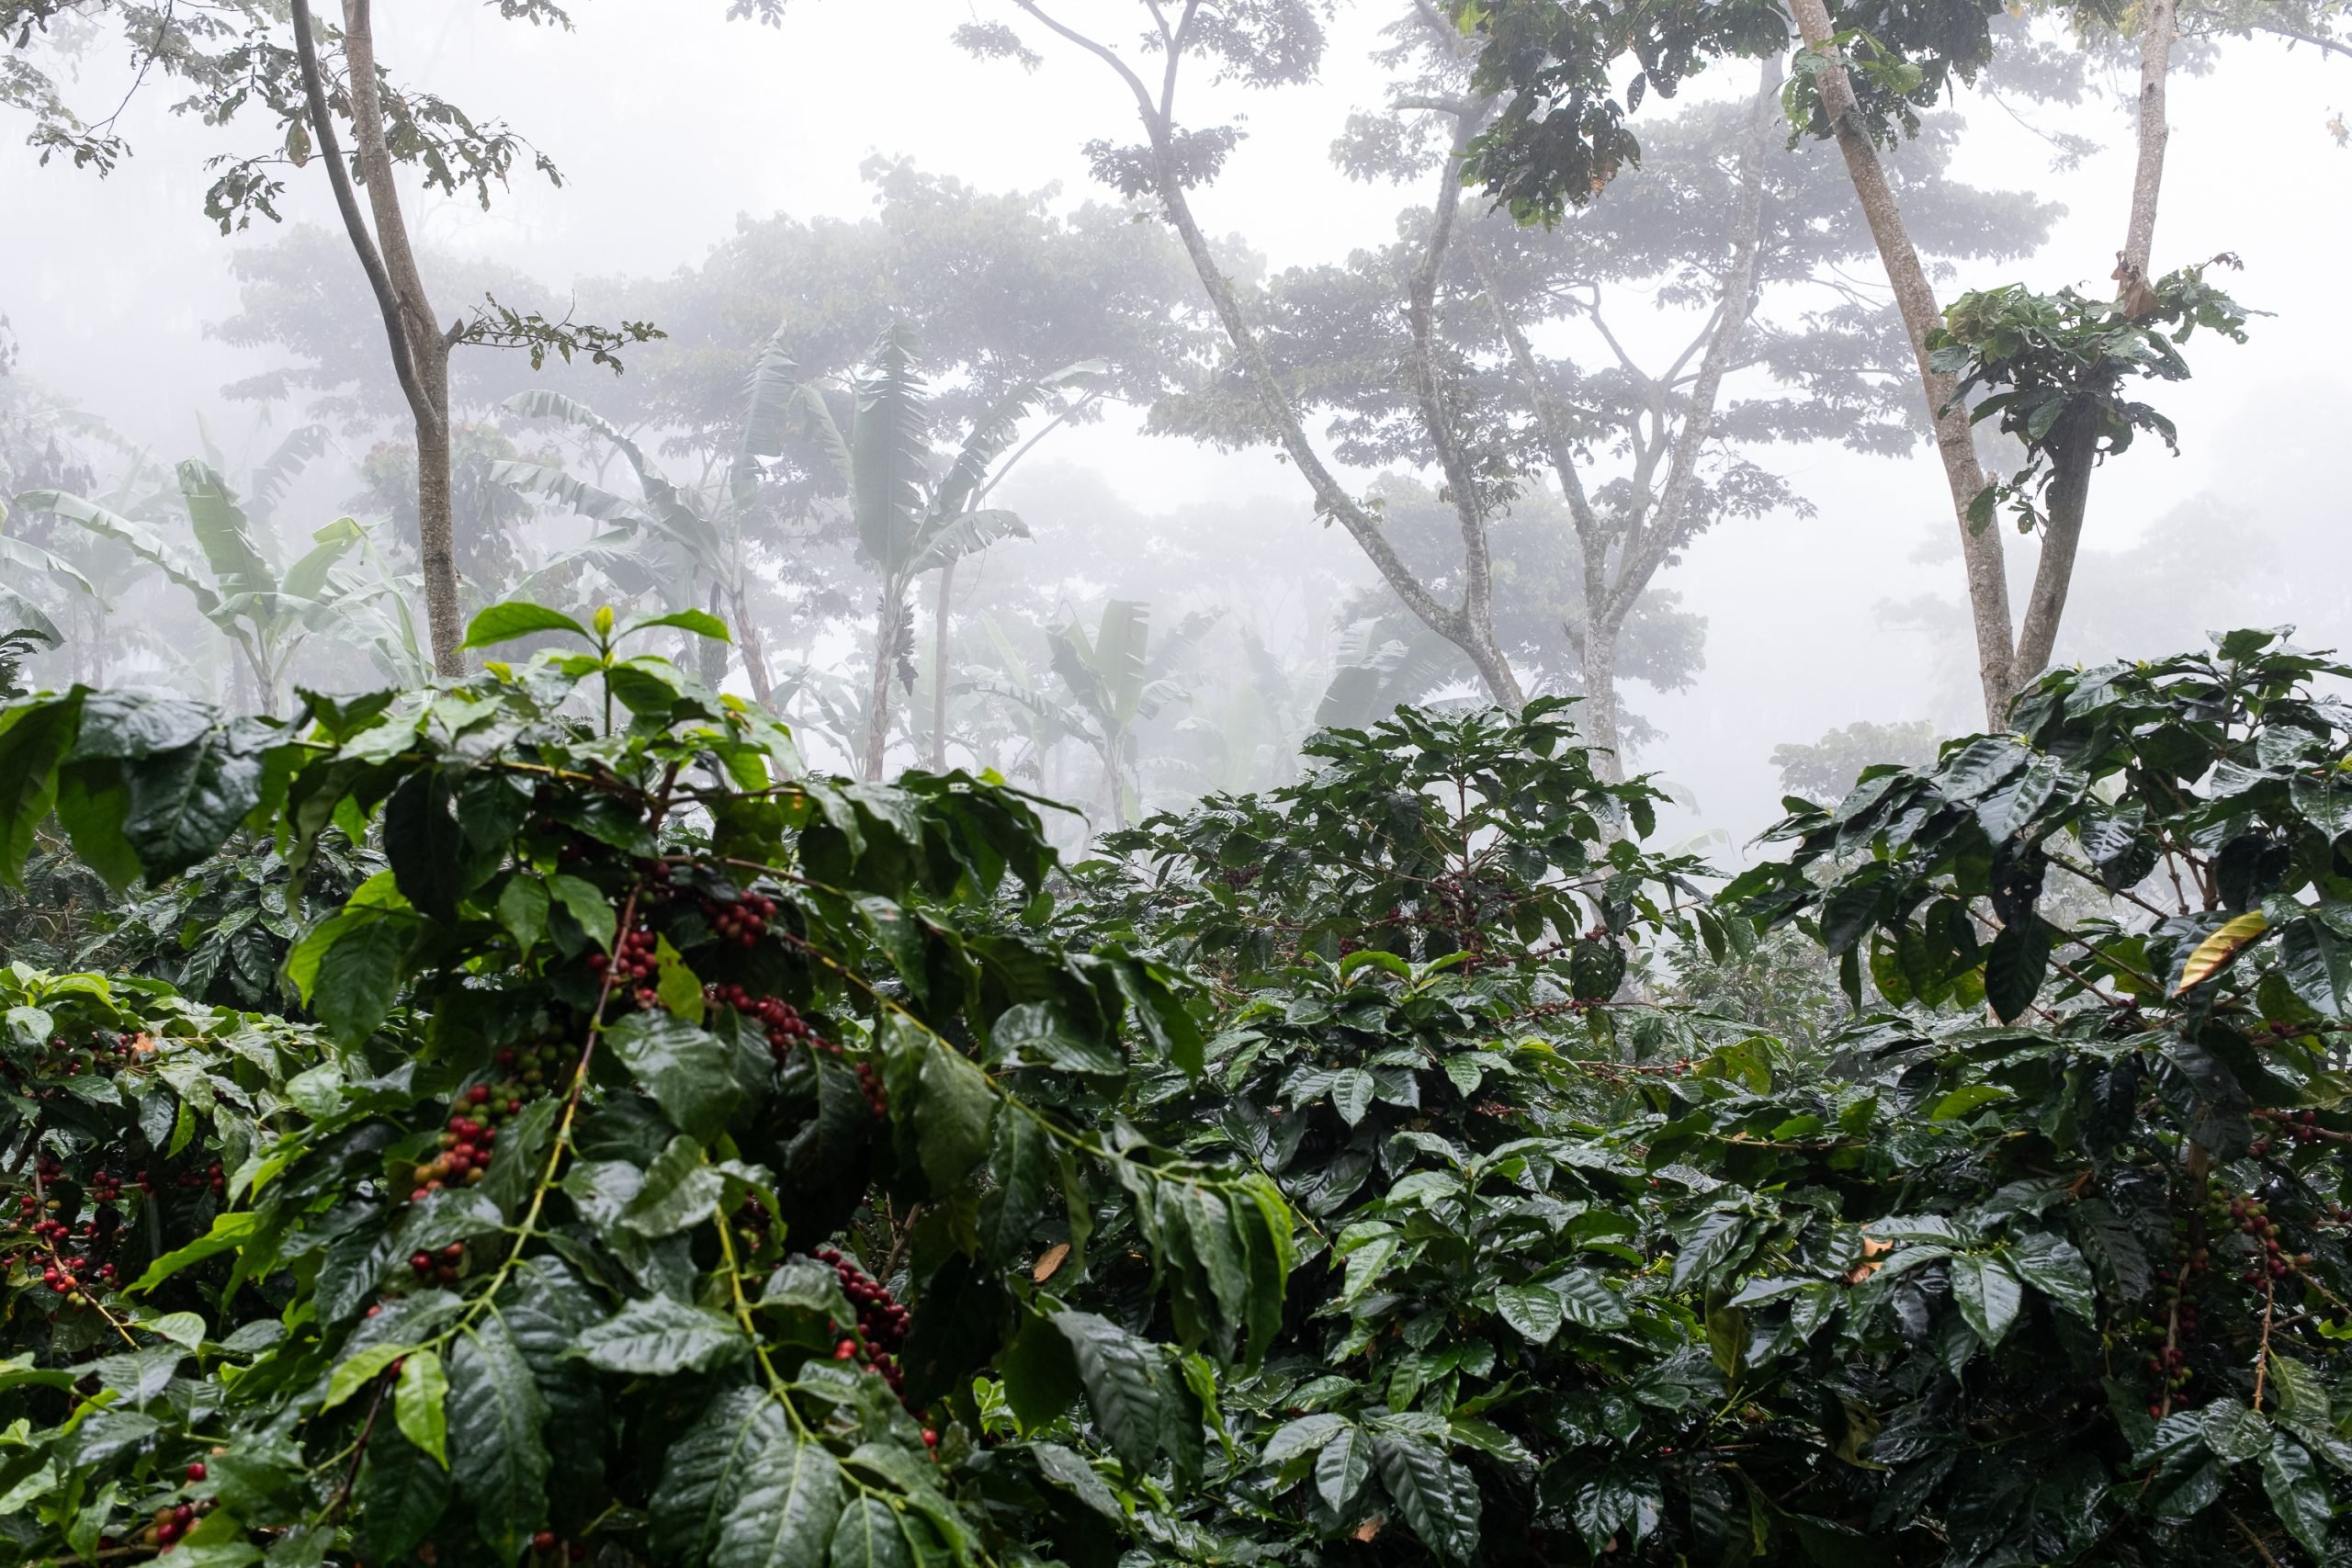 Toto sú dokonalé podmienky pre rast kávovníkov. Prales v ktorom je teplo a vlhko. Okolitá fauna a flóra tvoria pestrý ekosystém